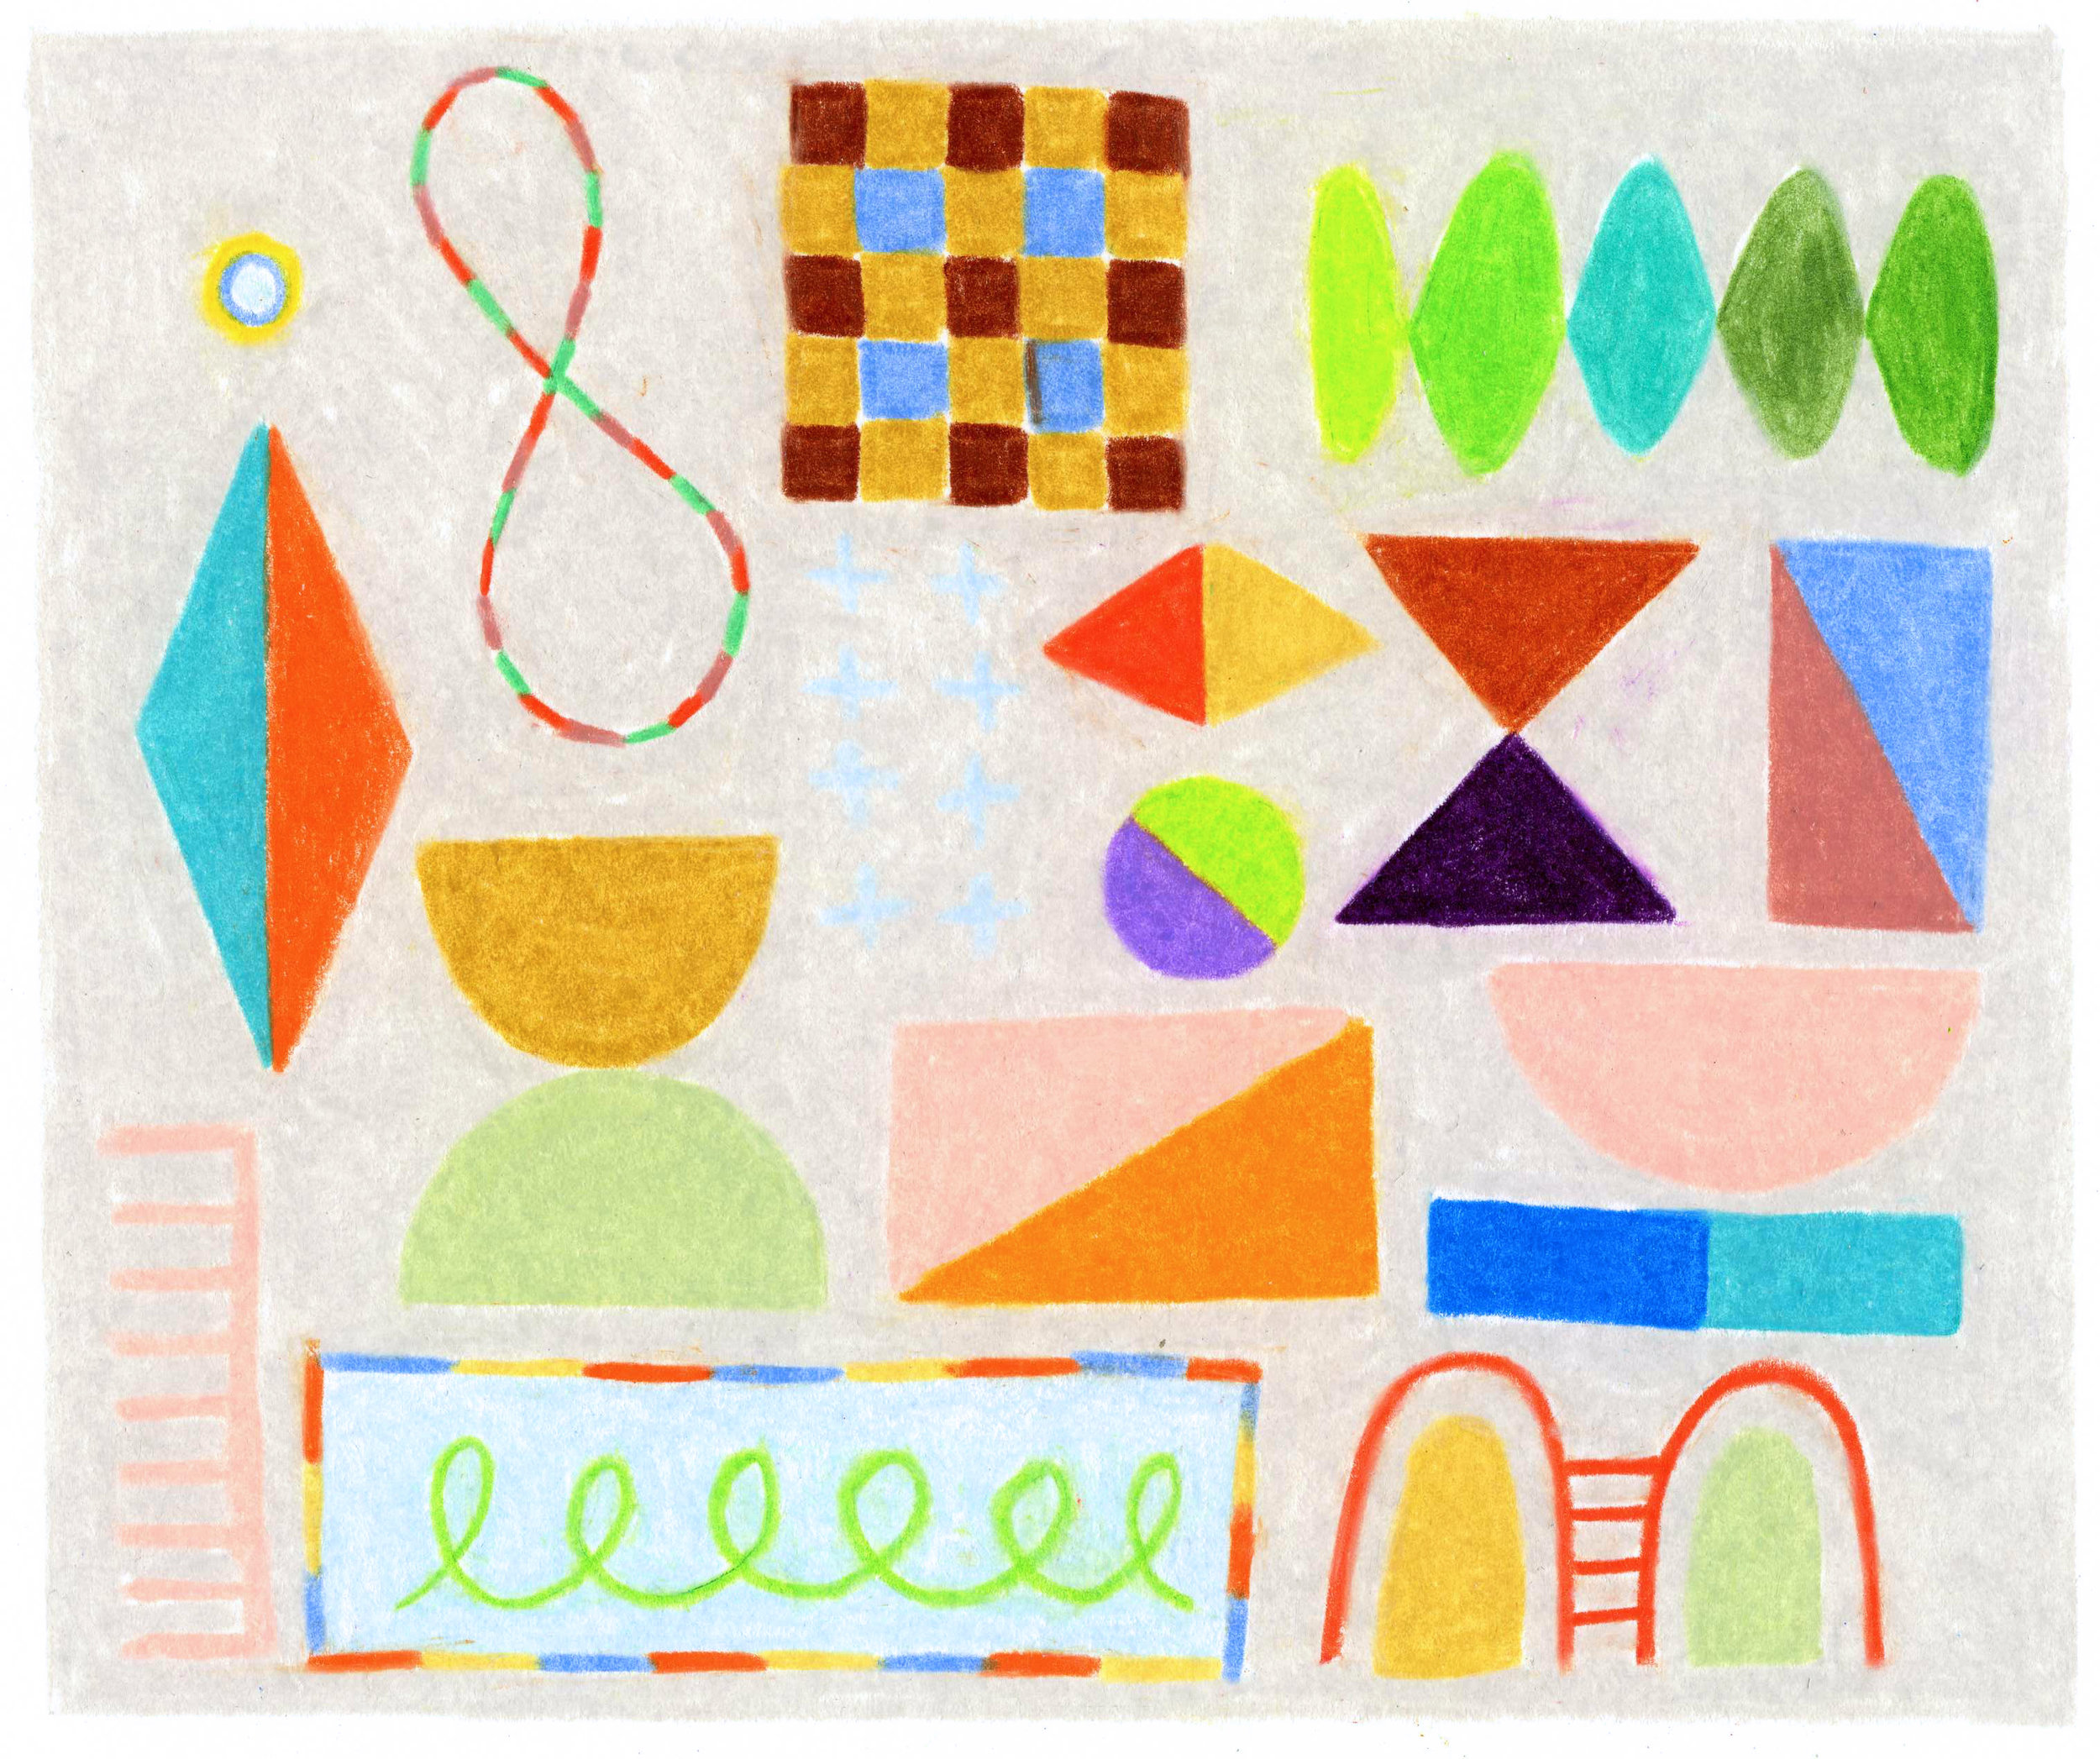   Colored Blocks   4.125” x 4.875”  colored pencil on bristol paper  2019 